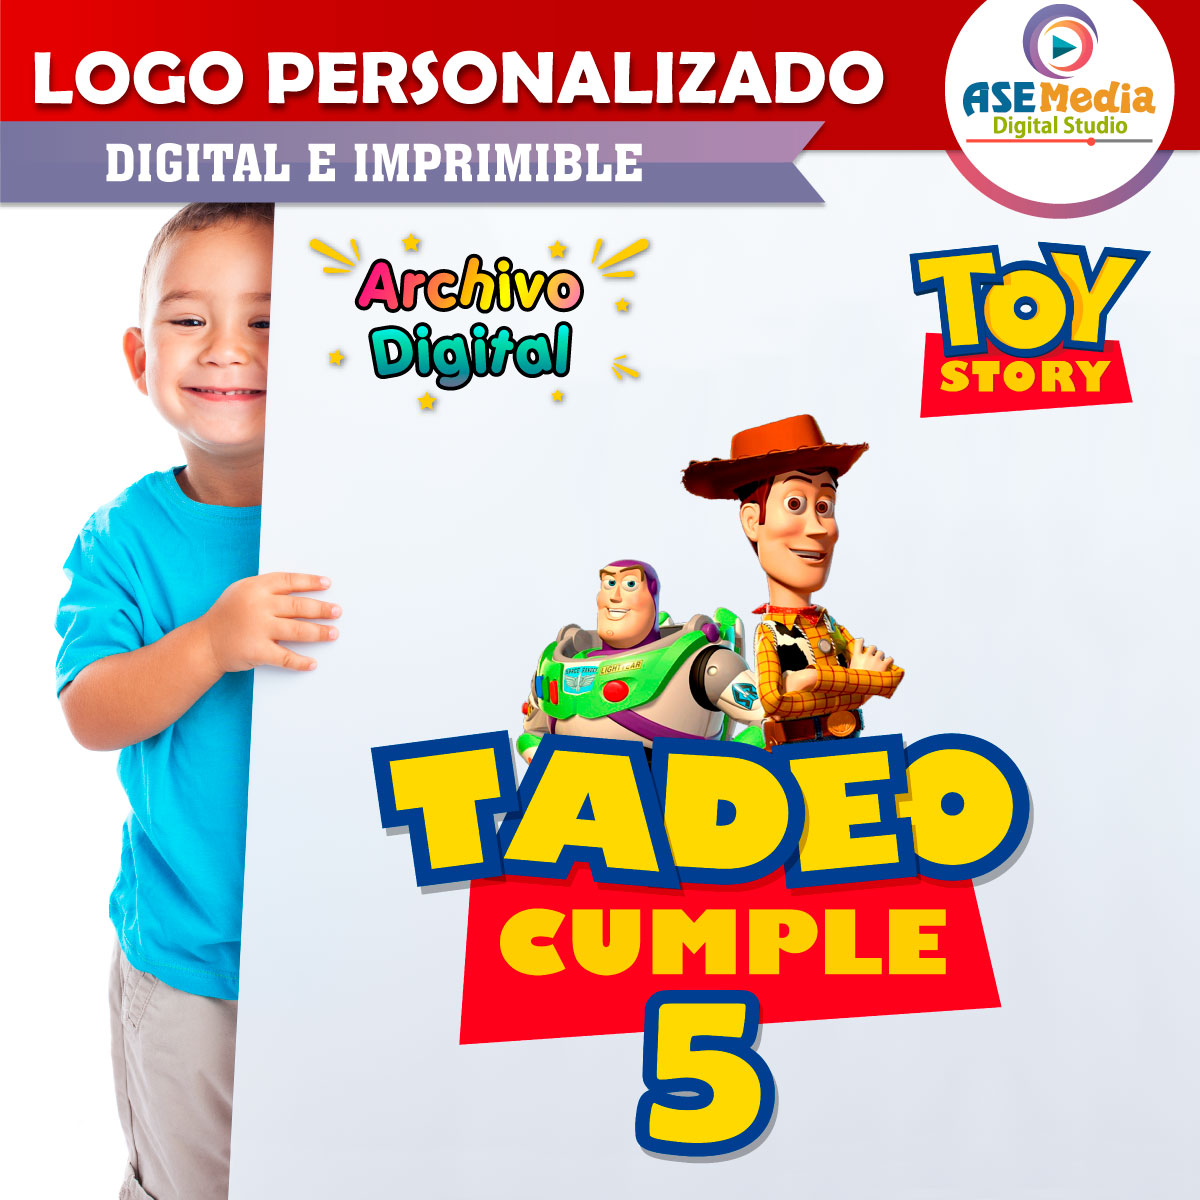 Toy Story Banderines Temáticos Imprimibles para Cumpleaños – AseMedia  Digital Studio